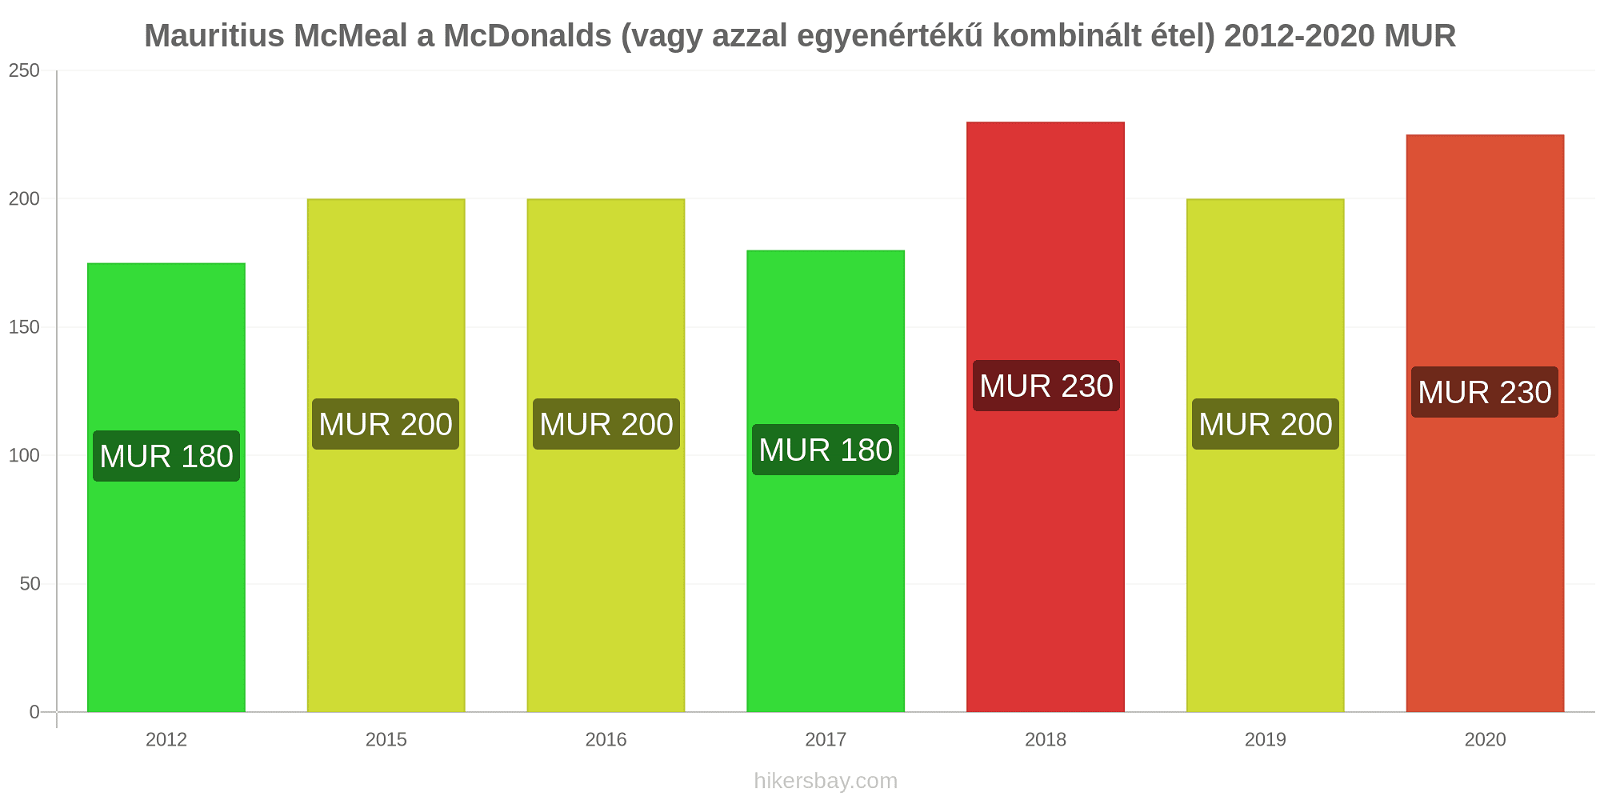 Mauritius árváltozások McMeal a McDonalds (vagy azzal egyenértékű kombinált étel) hikersbay.com